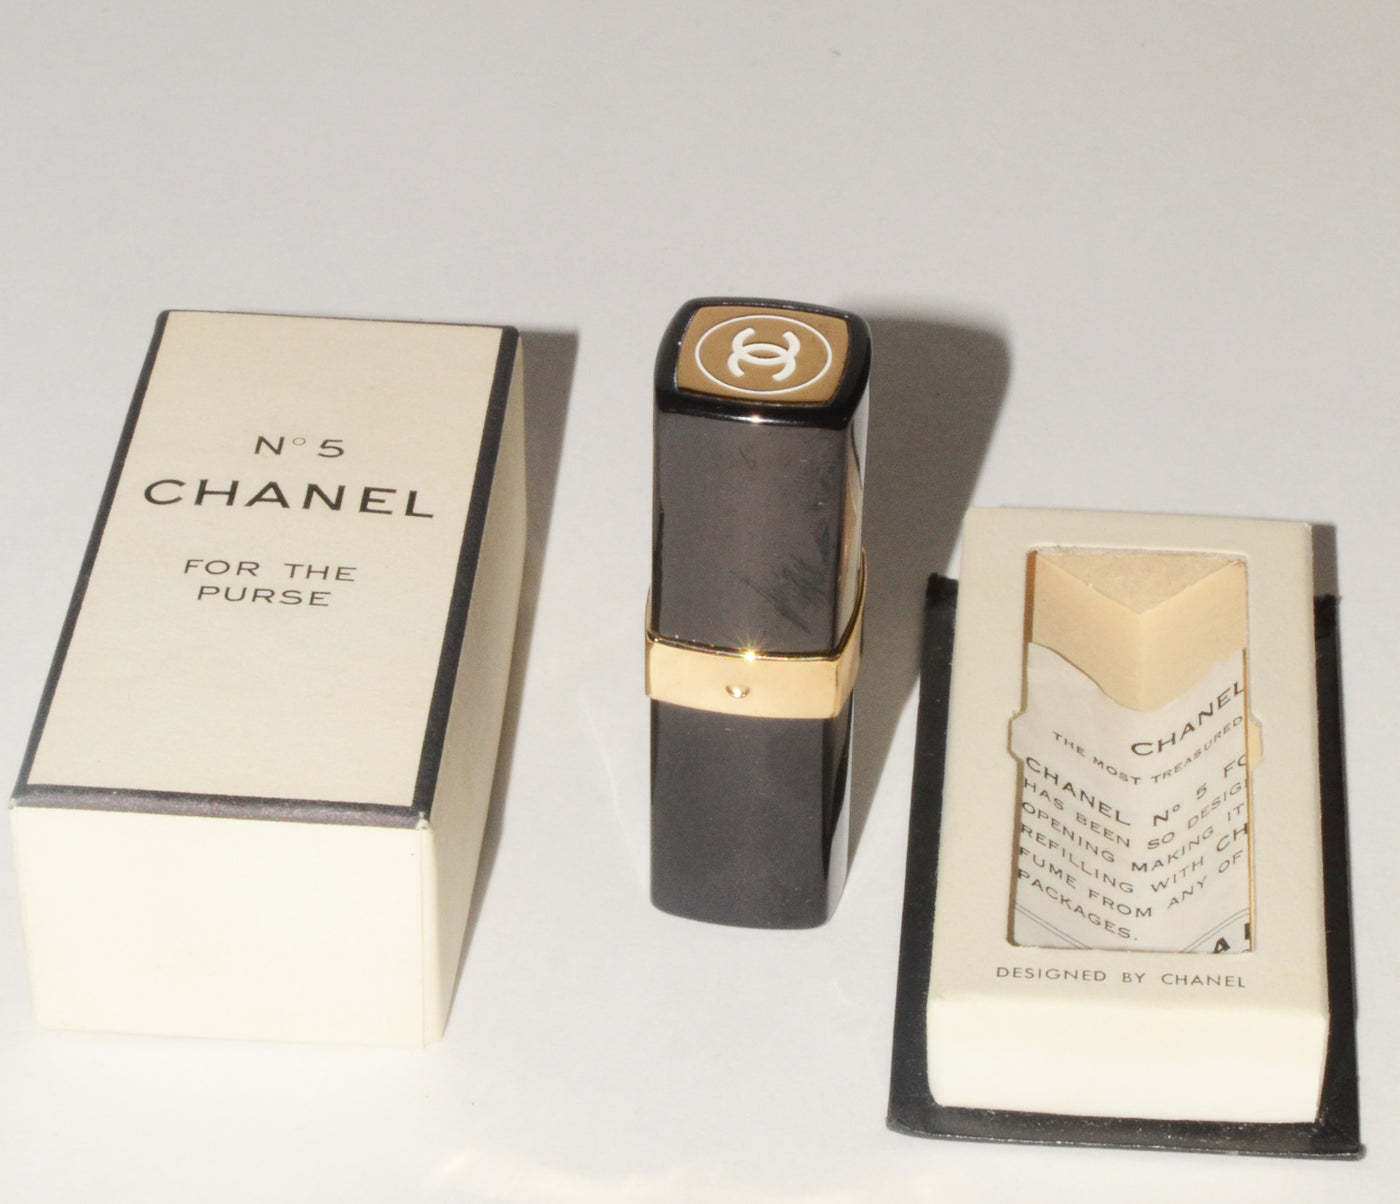 Vintage Chanel No 5 Purse Perfume